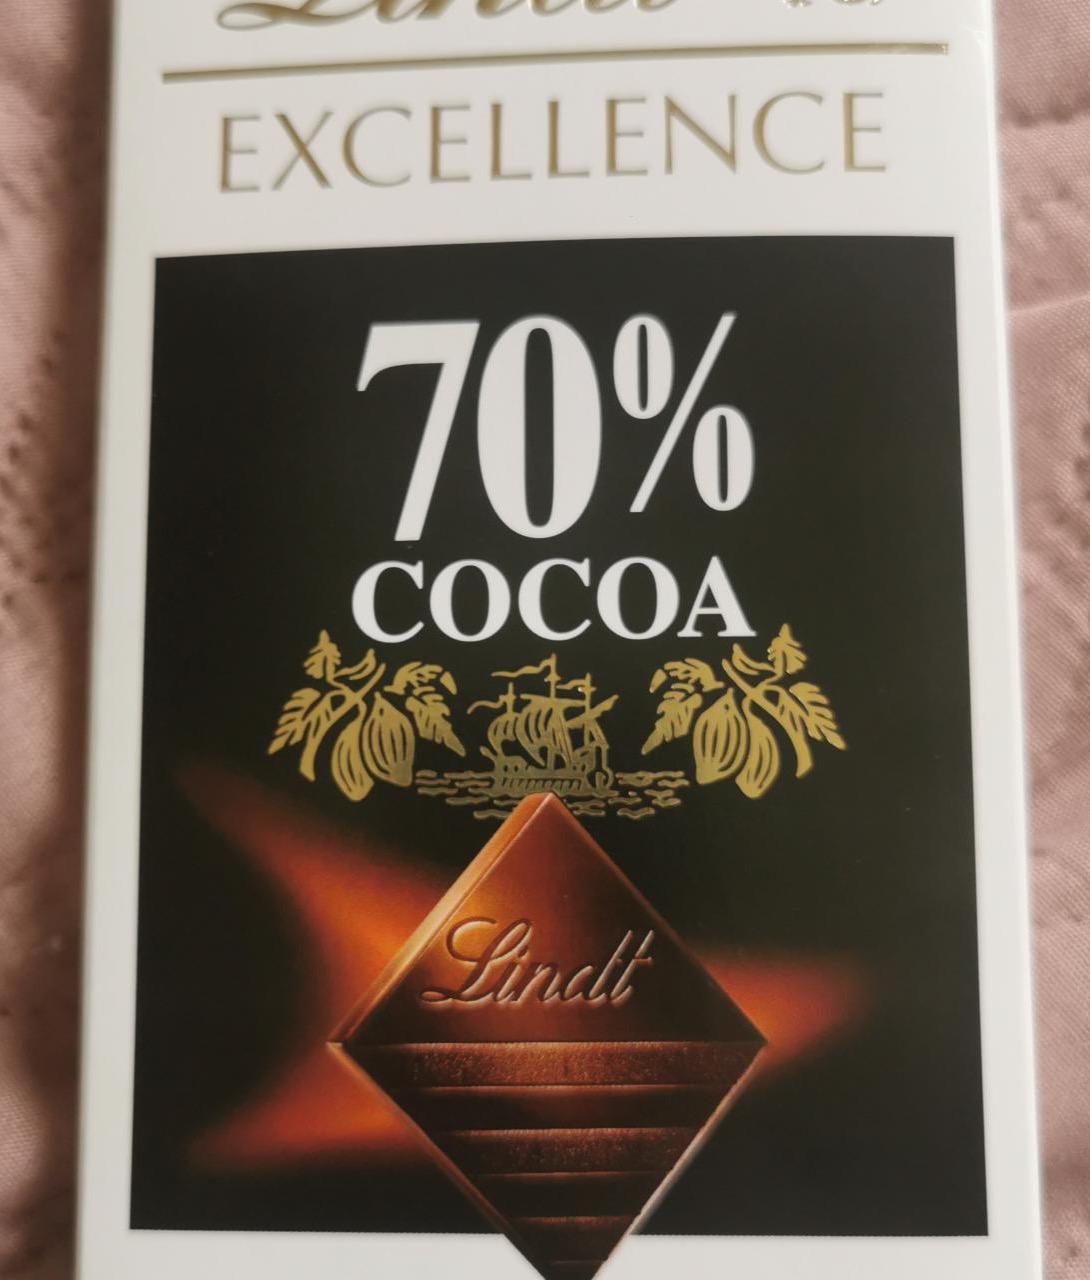 Képek - 70% Cocoa étcsokoládé Lindt